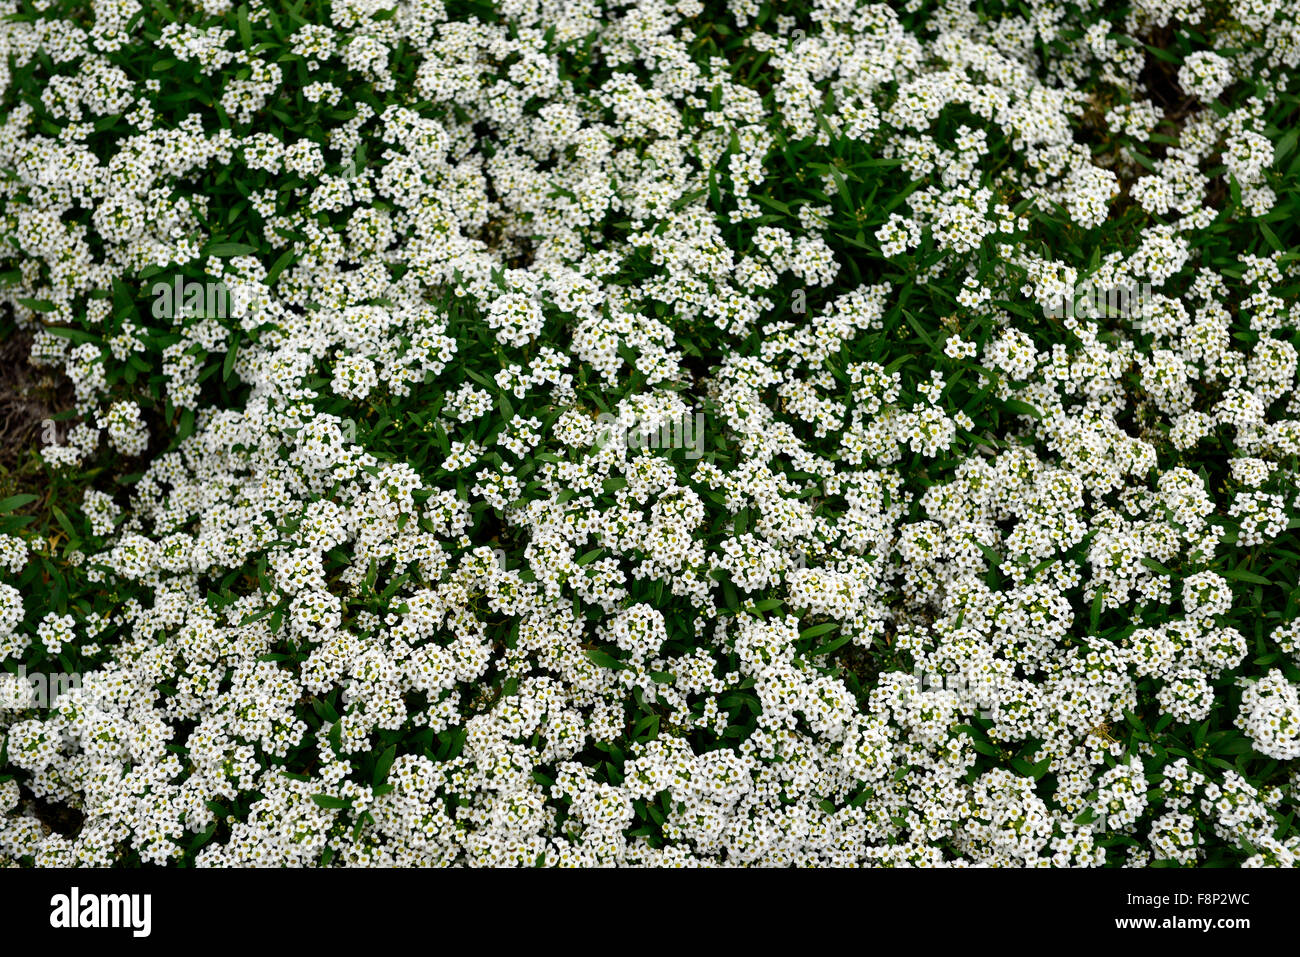 Lobularia Maritima Teppich des Schnees Syn Alyssum Sorte Wunderland weiße Blume Blüte blühen jährlich Masse reichlicher Fülle Farbe Stockfoto